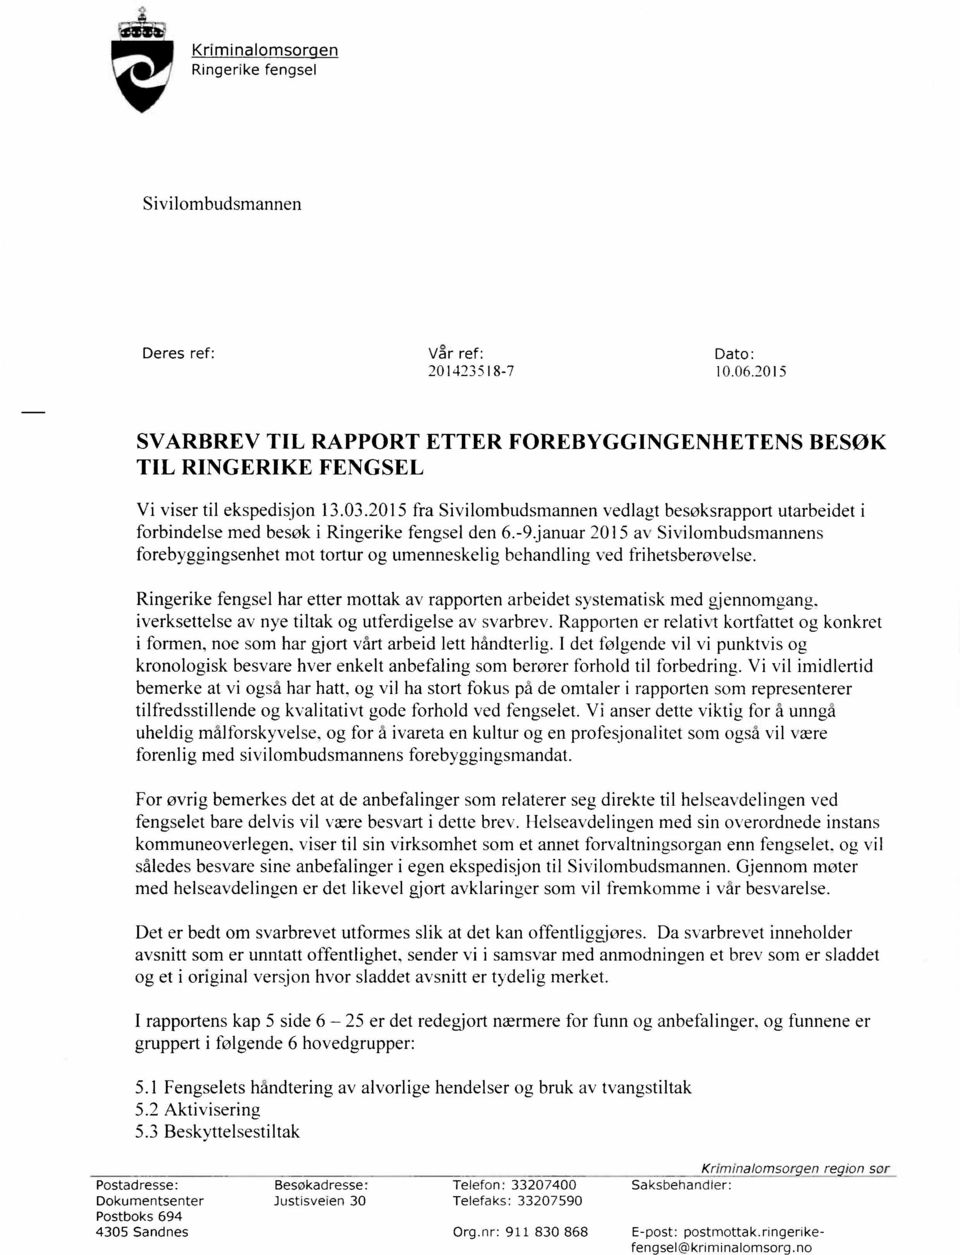 2015 fra Sivilombudsmannen vedlagt besøksrapport utarbeidet i forbindelse med besøk i Ringerike fengsel den 6.-9.